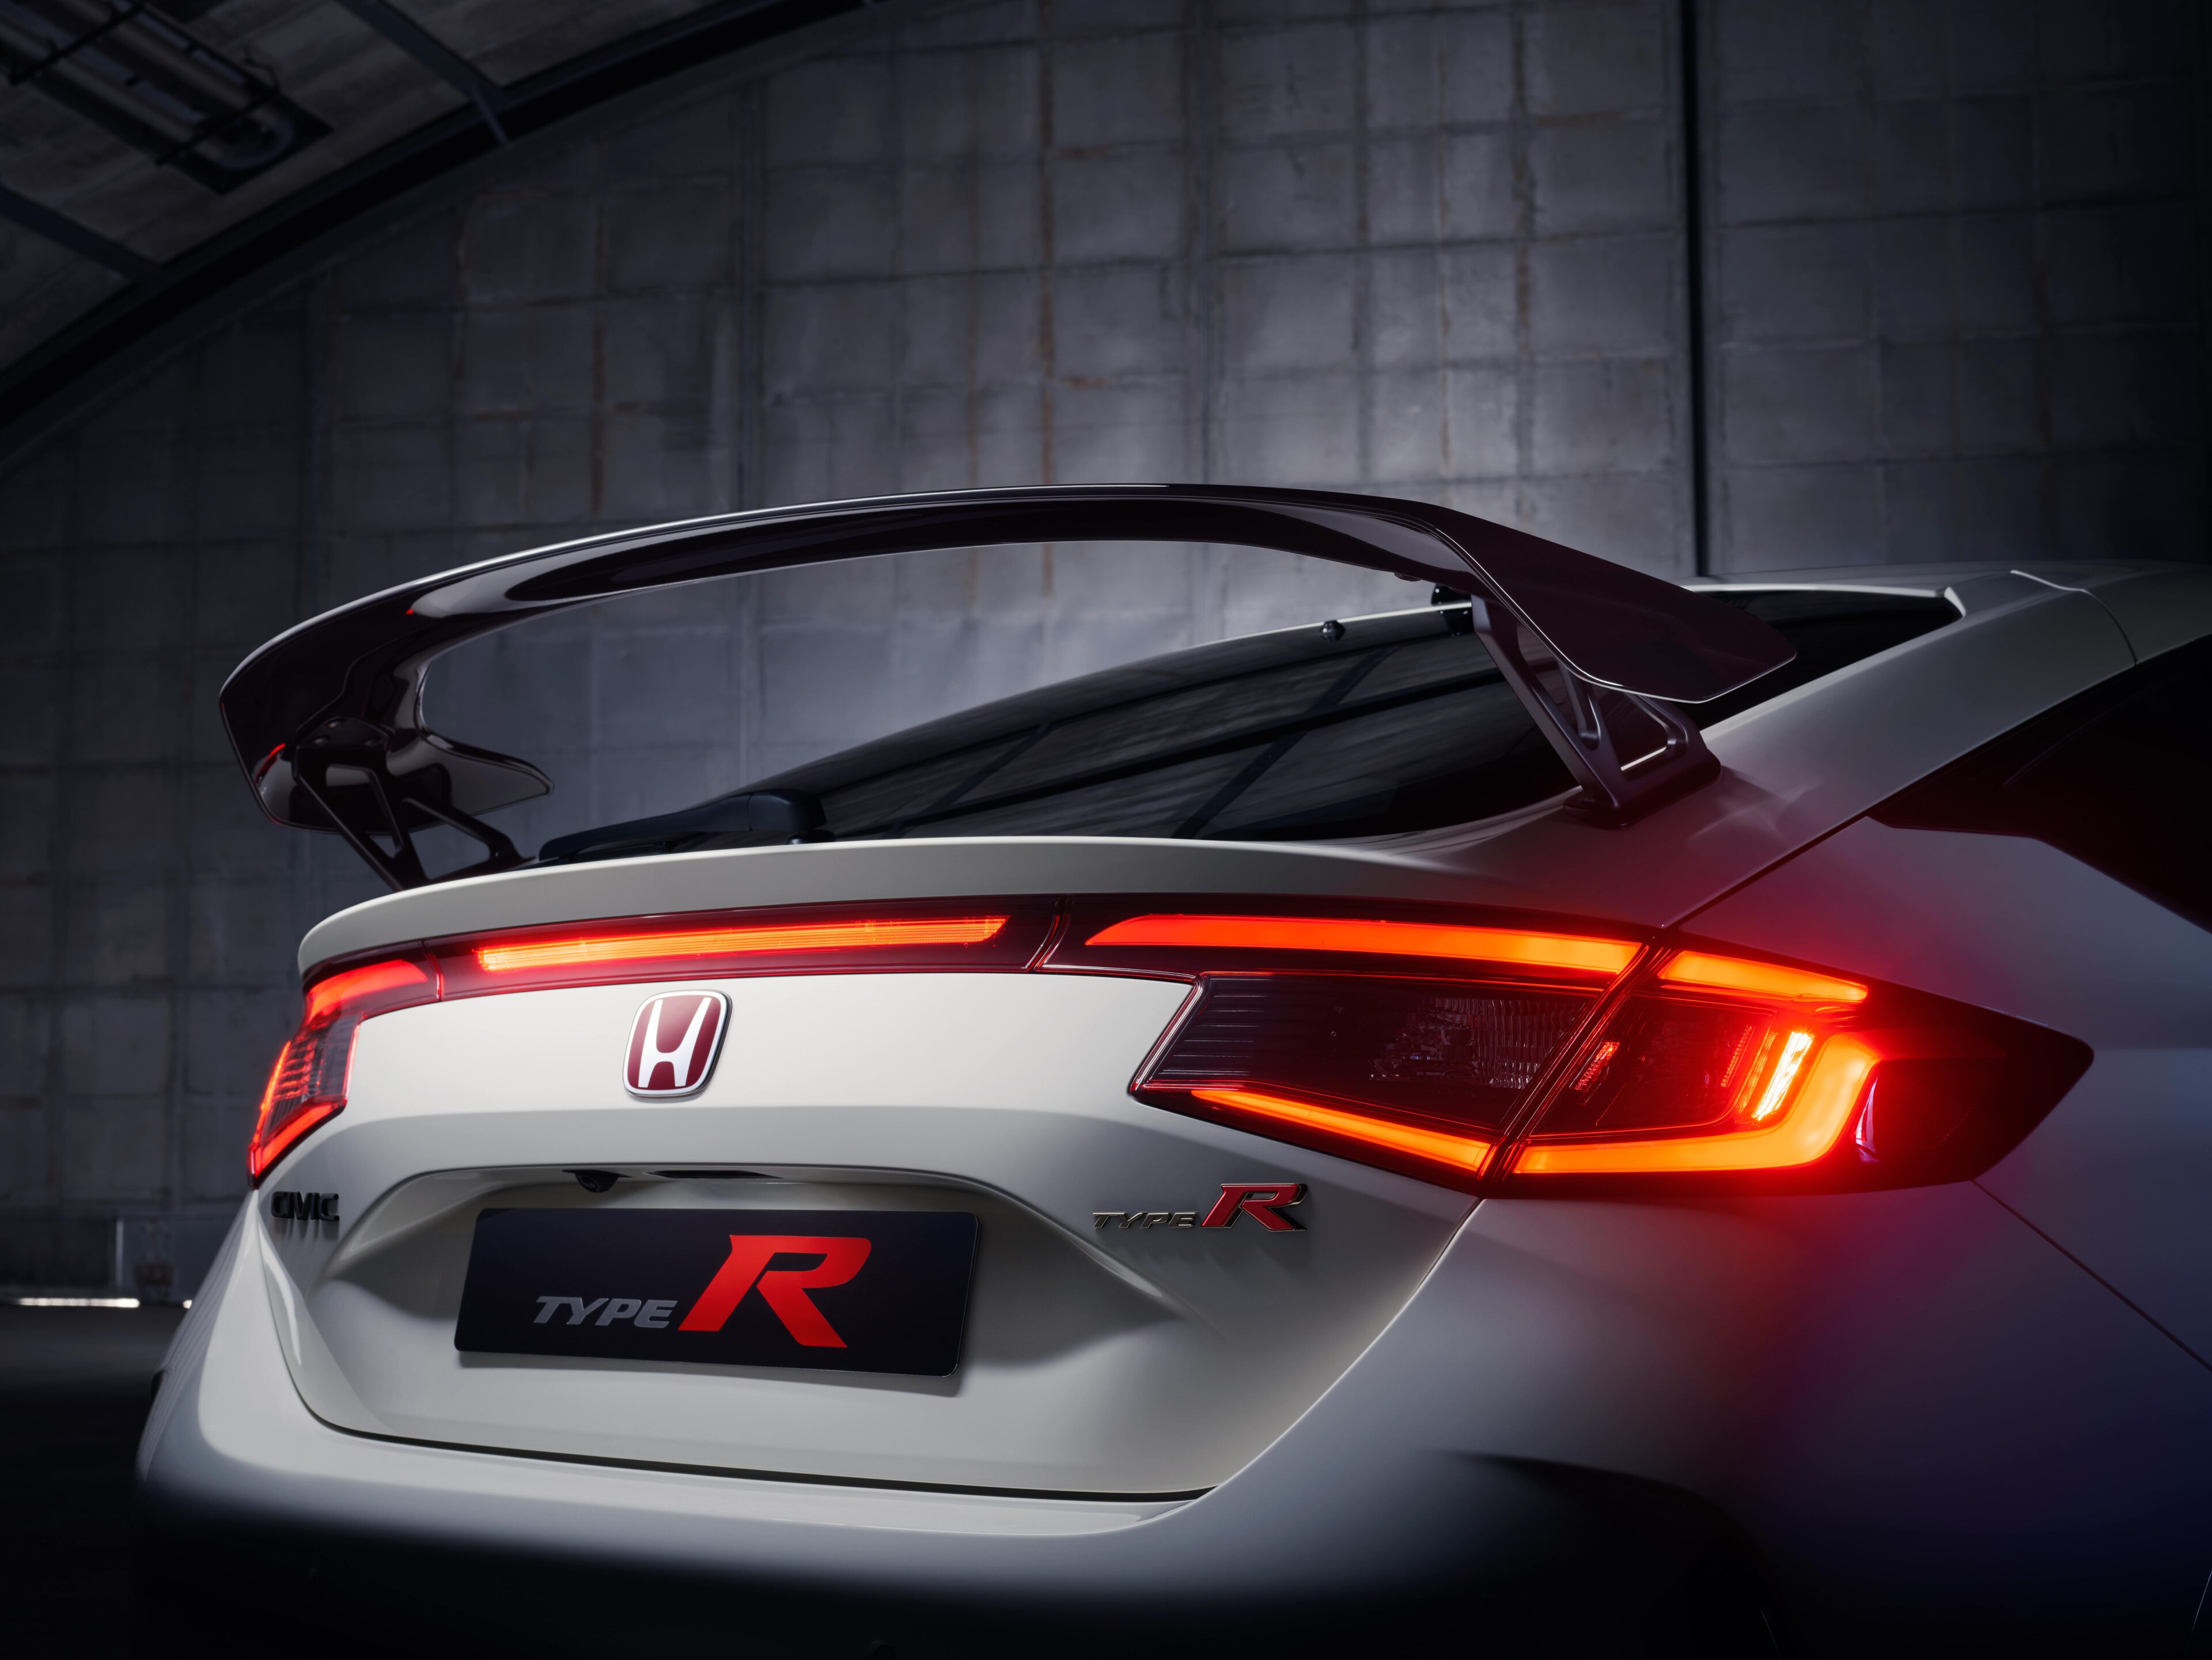 De achterspoiler van de Type R heeft een nieuwe zwevende vorm die de aerodynamische neerwaartse kracht verbetert.